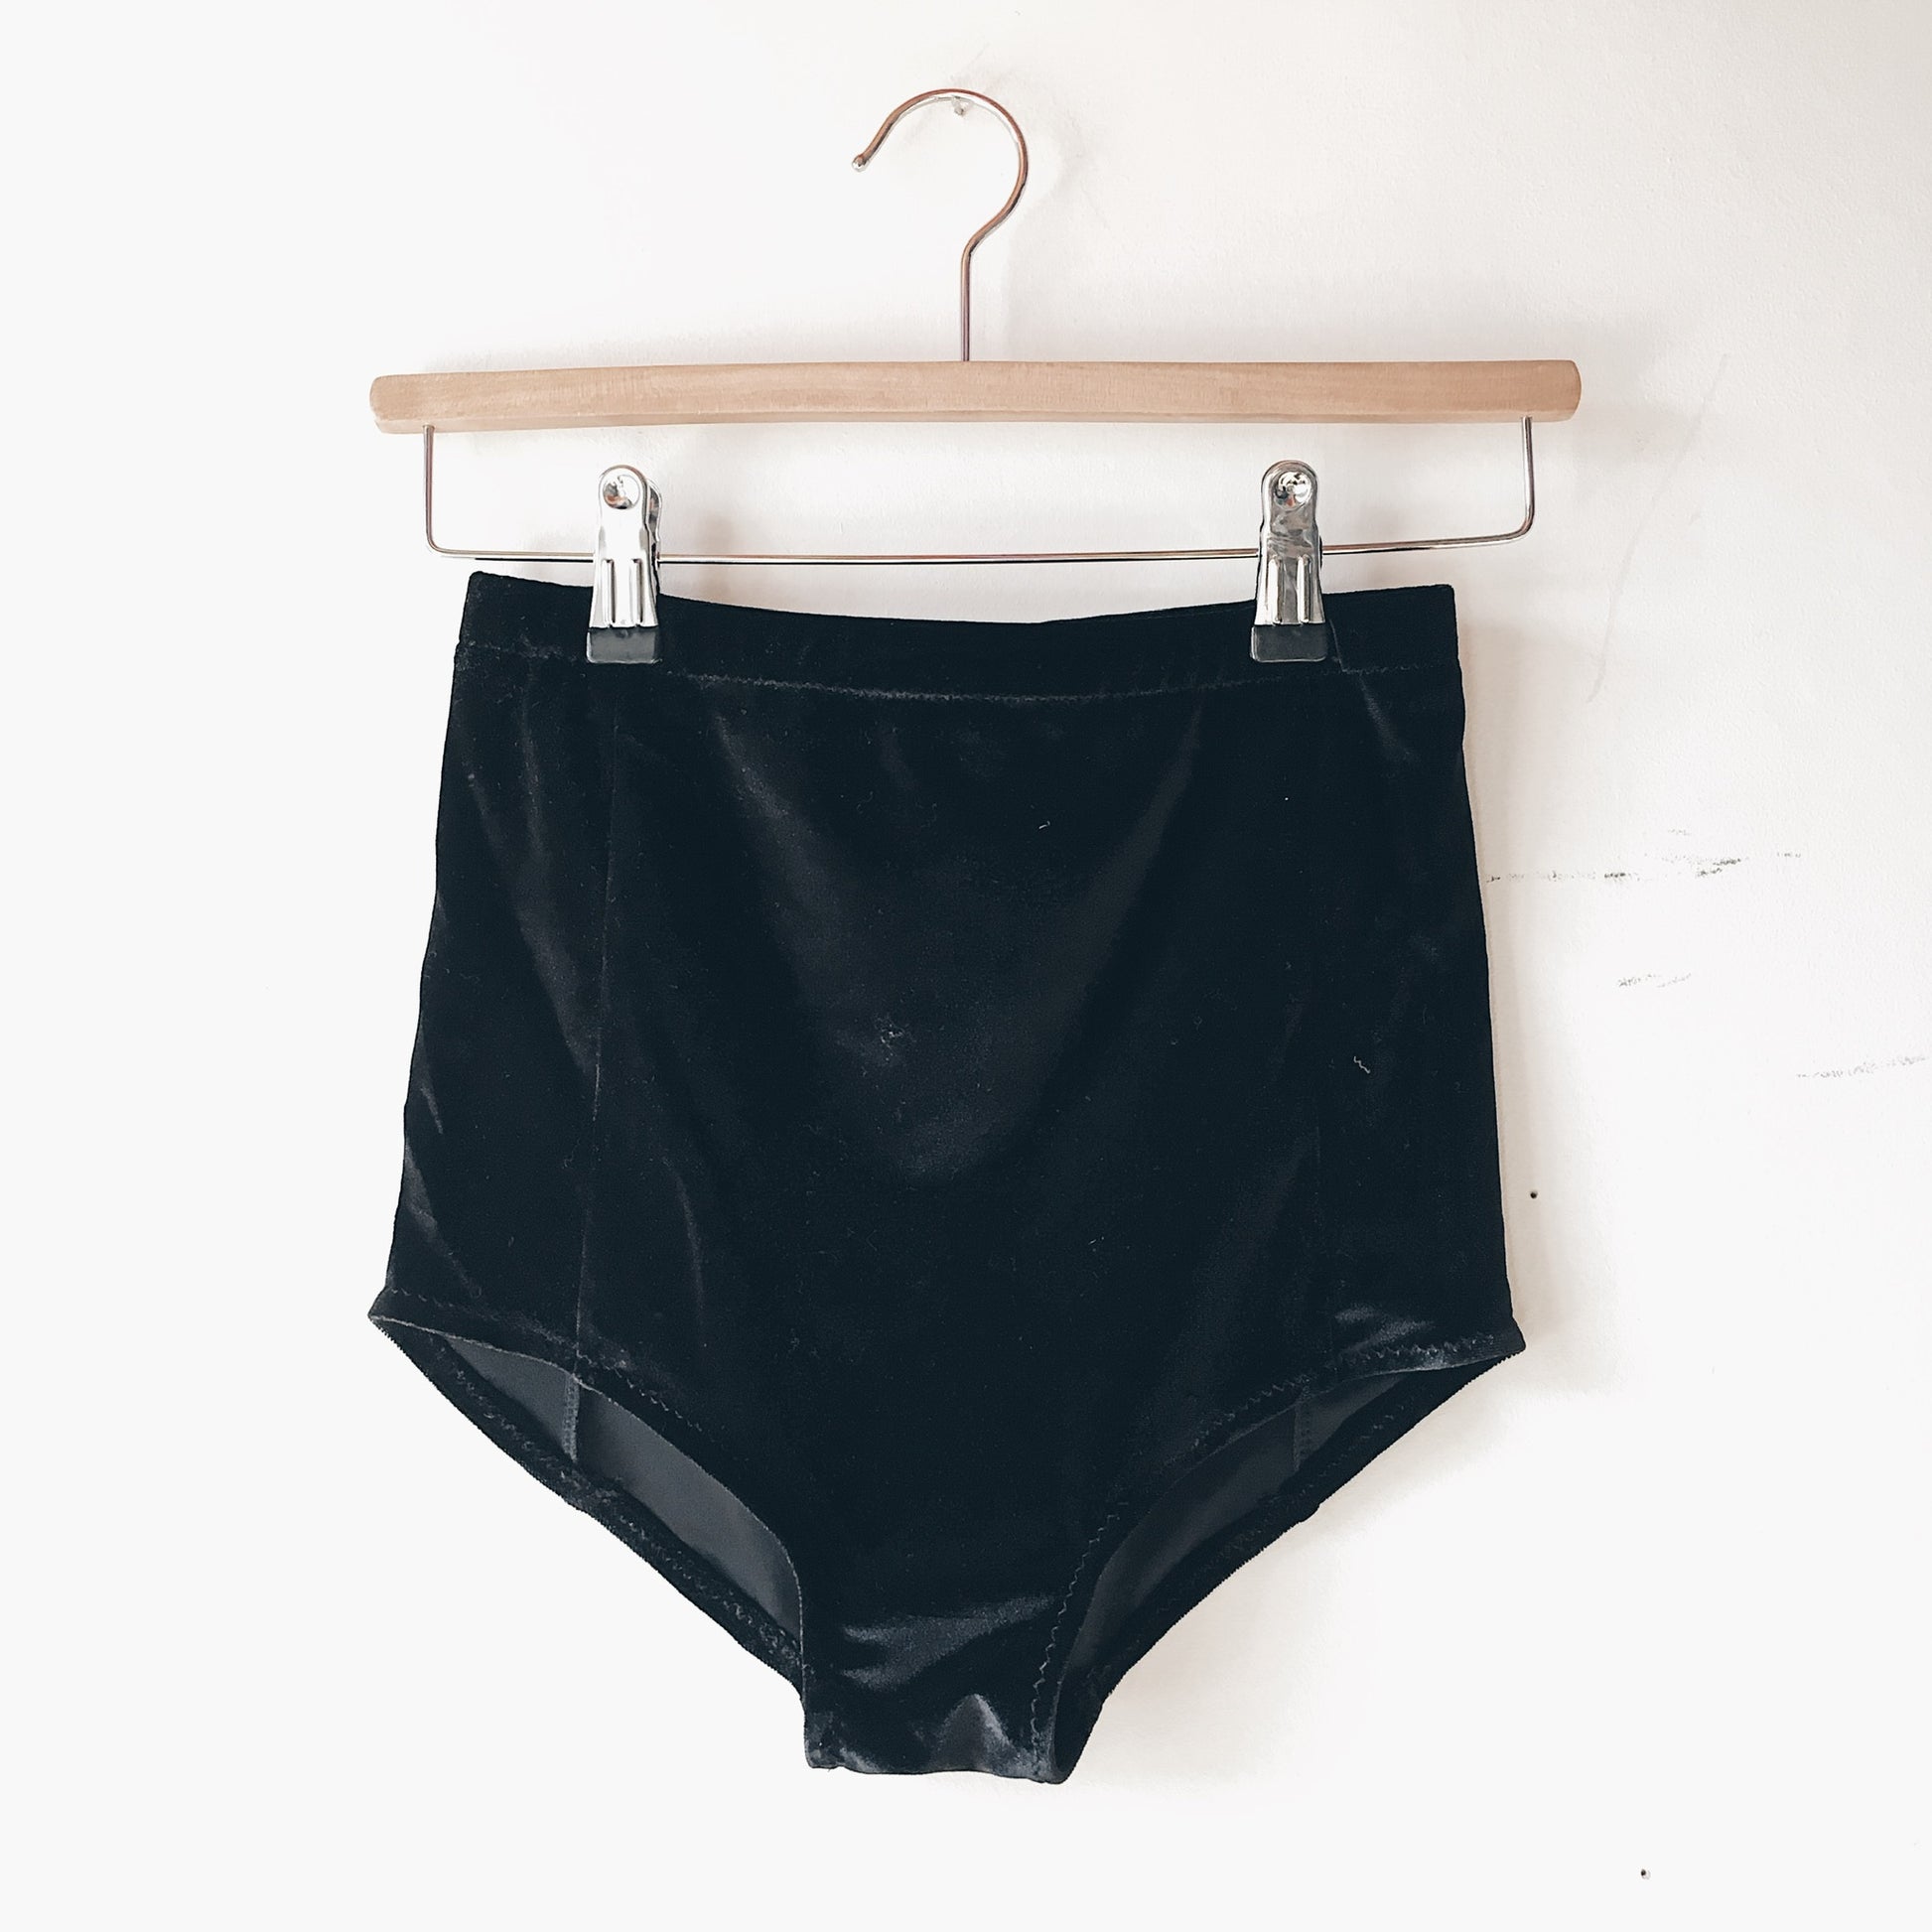 Black velvet booty shorts on a wooden hanger against a white wall